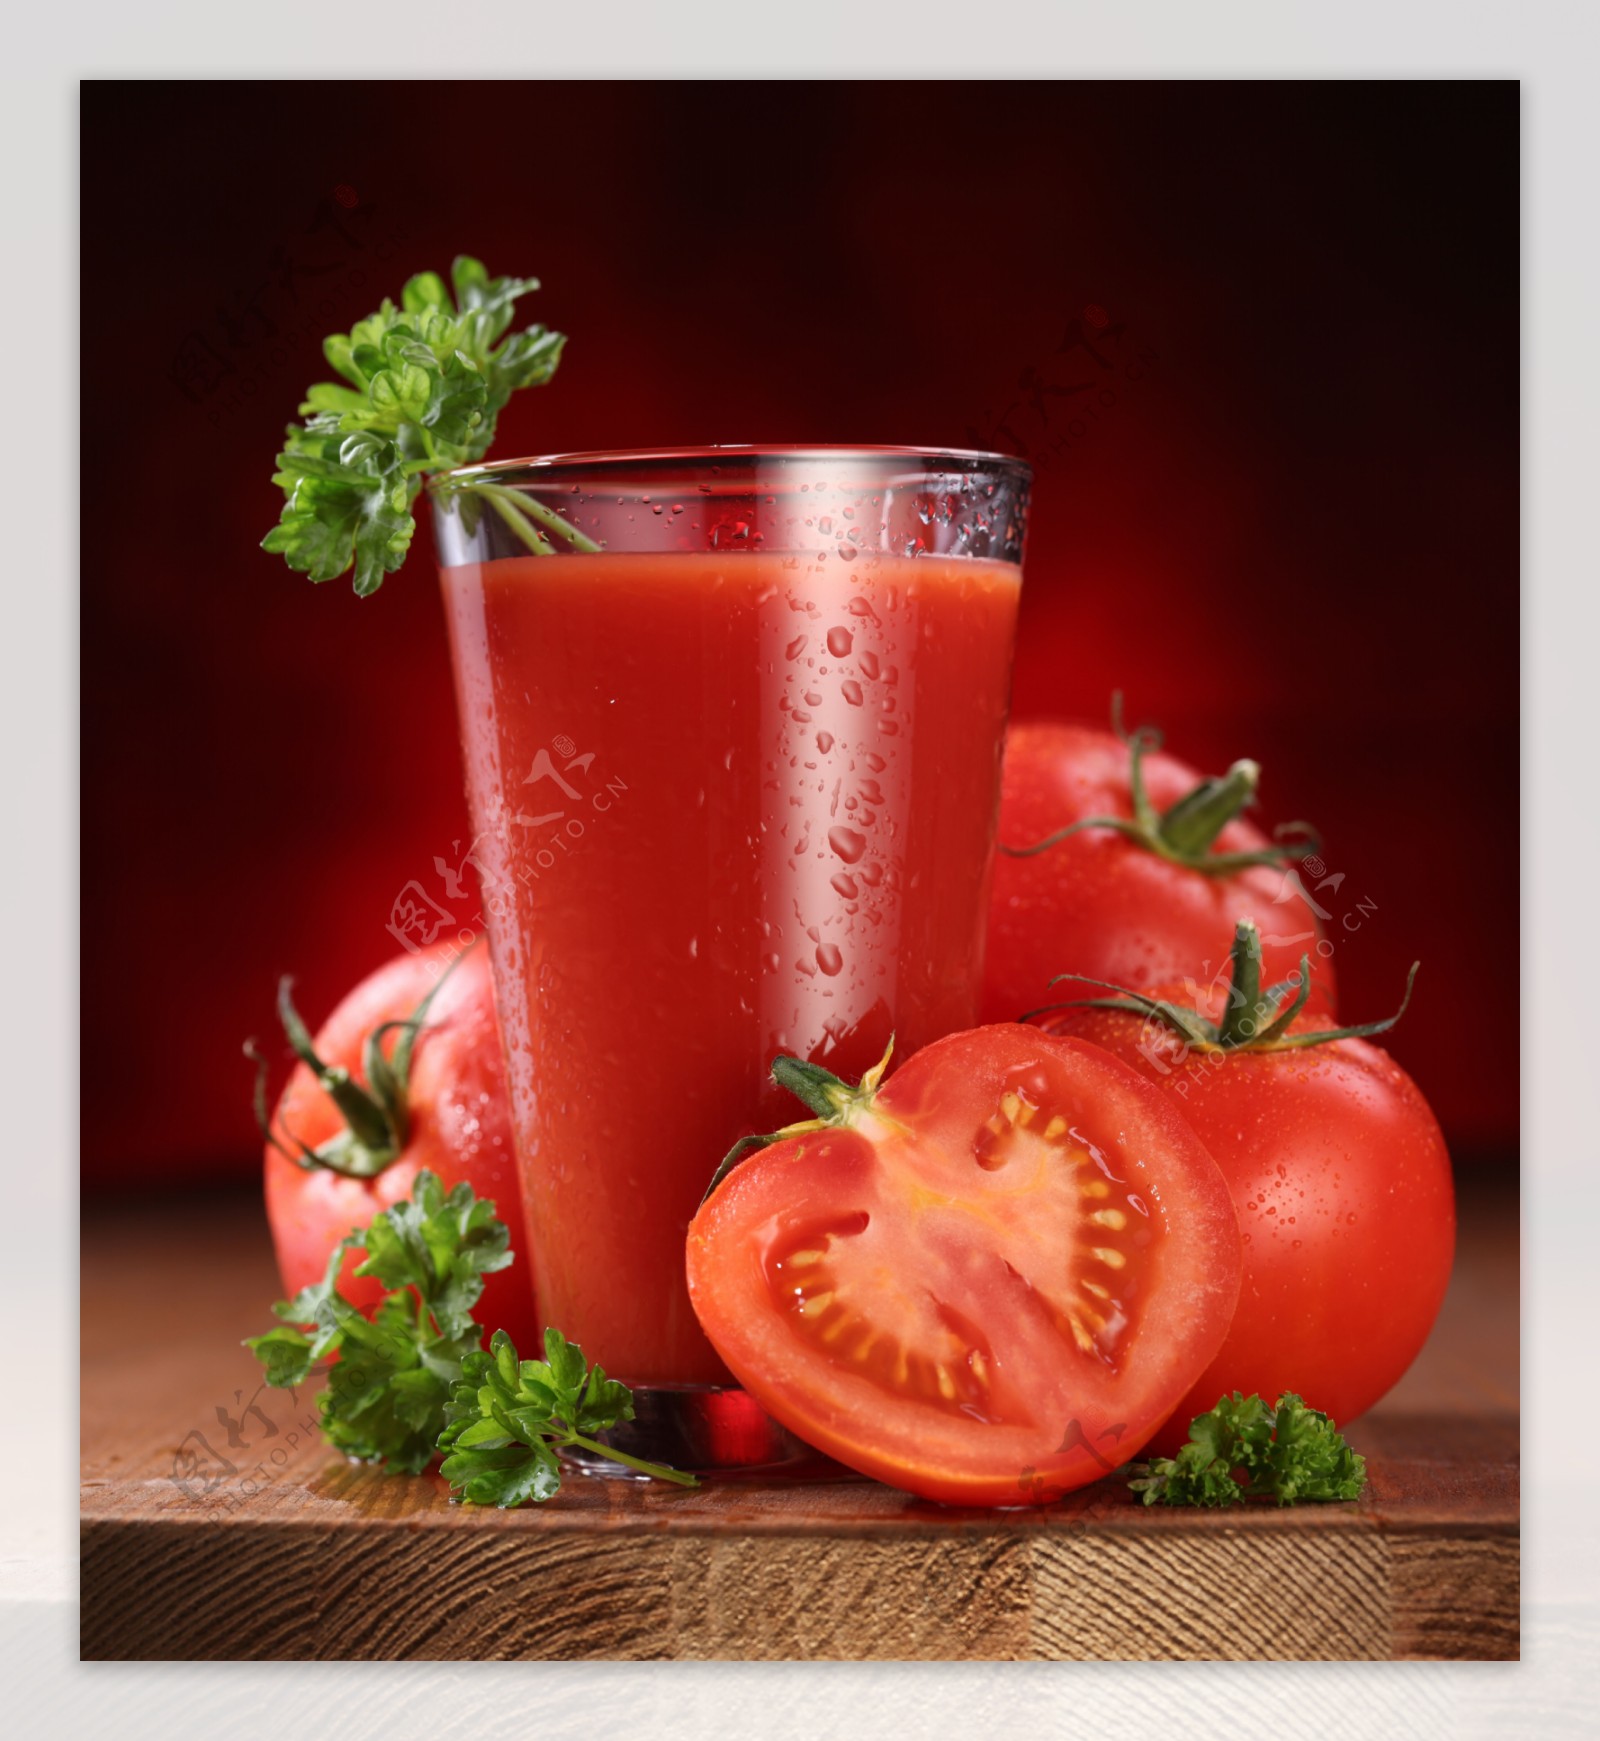 在玻璃的新鲜的西红柿汁 库存图片. 图片 包括有 红色, 新鲜, 甜甜, 自创, 土气, 纯汁浓汤, 有机 - 69062751